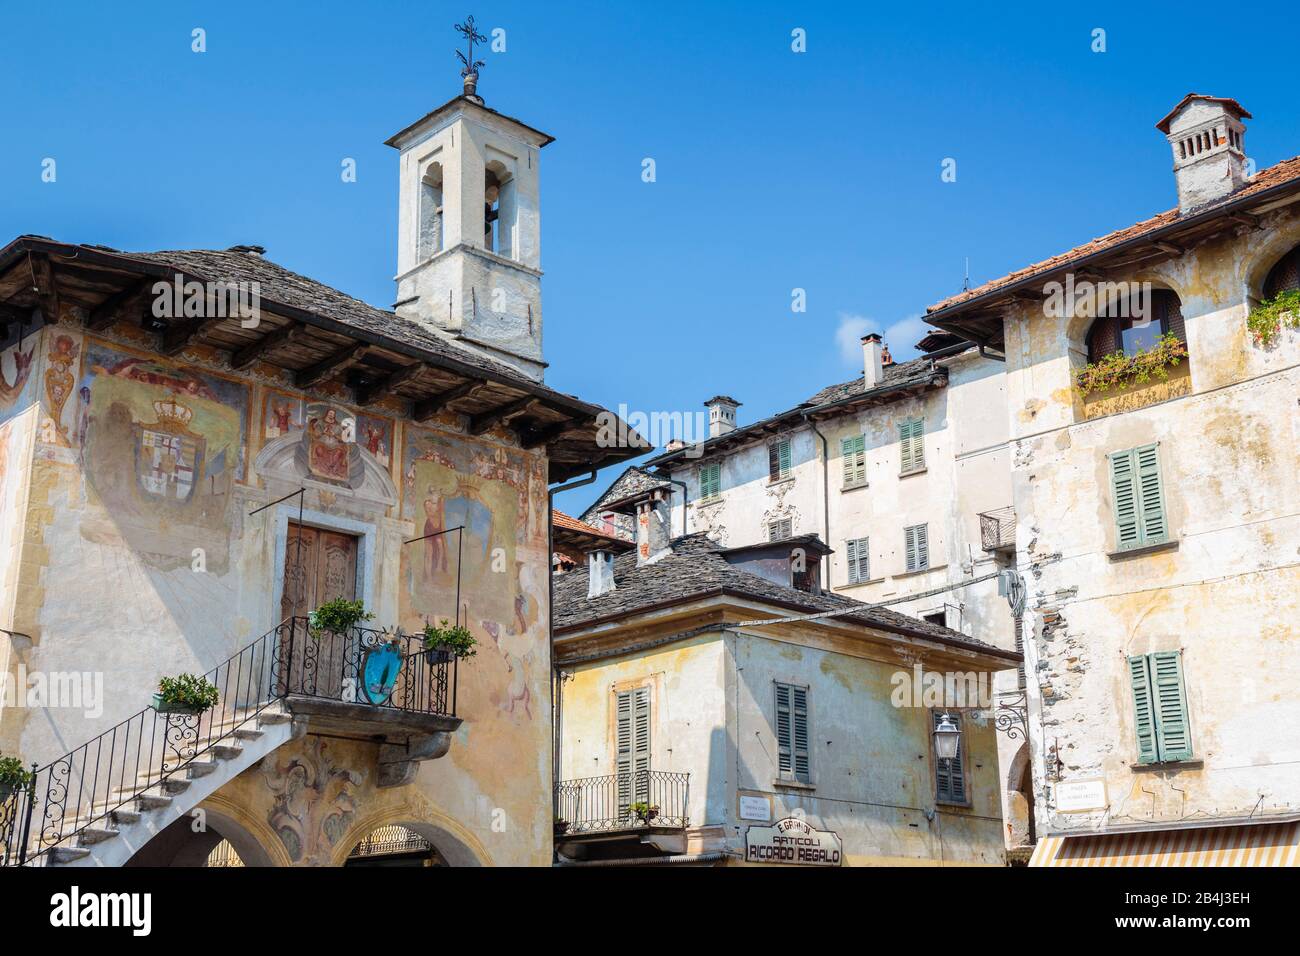 Europa, Italien, Piemont, Orta San Giulio. Der Palazzo della Comunità an der Piazza Motta, genannt Broletto (1582). Stock Photo